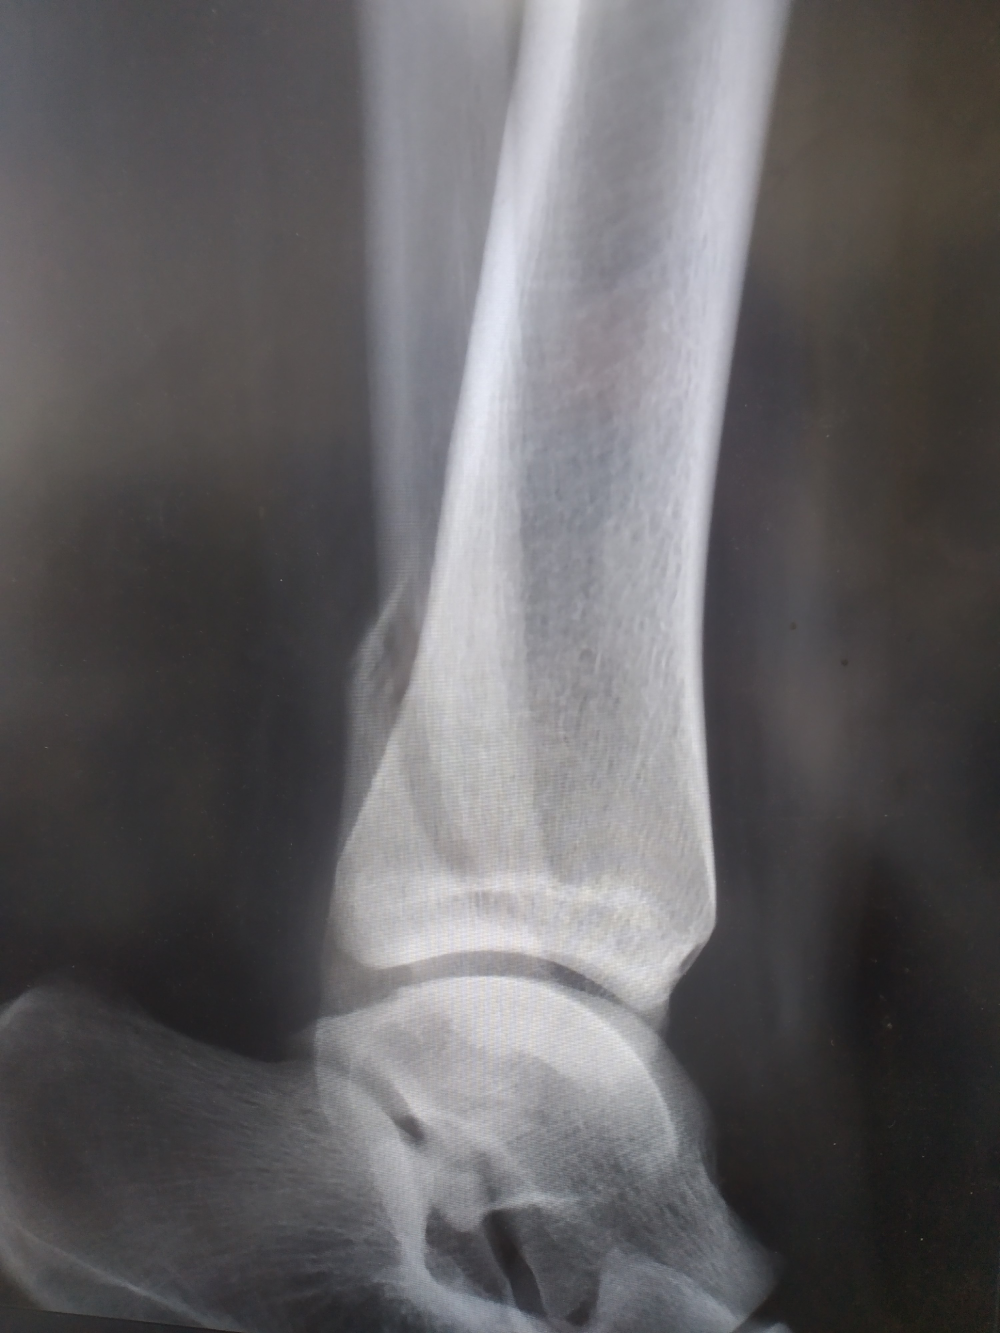 一文搞懂踝关节骨折中的Lauge-Hansen分型与Weber分型